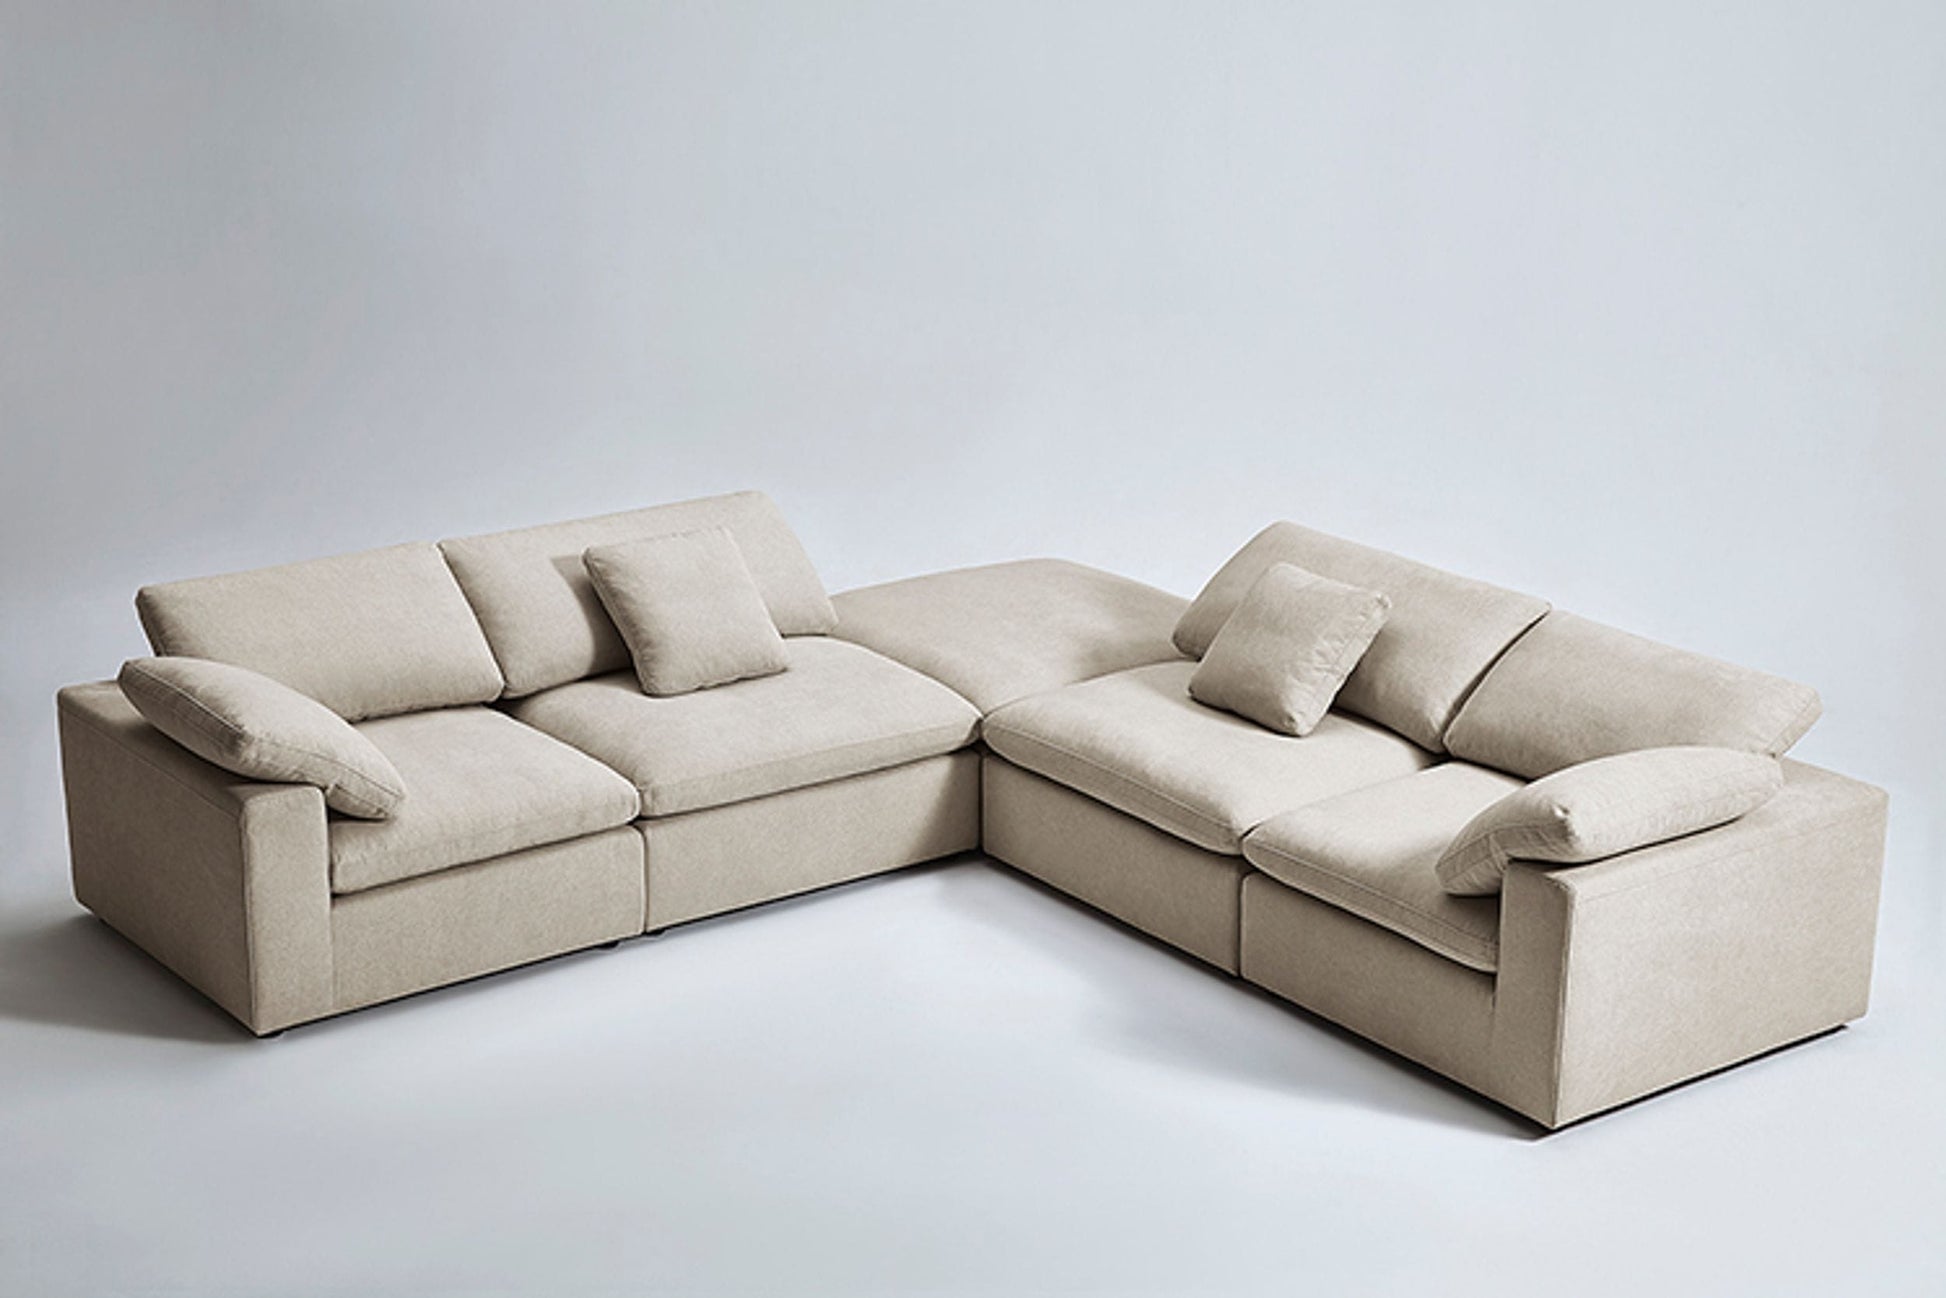 Divani Casa Kramer - Modern Modular Cream Fabric Sectional Sofa-2